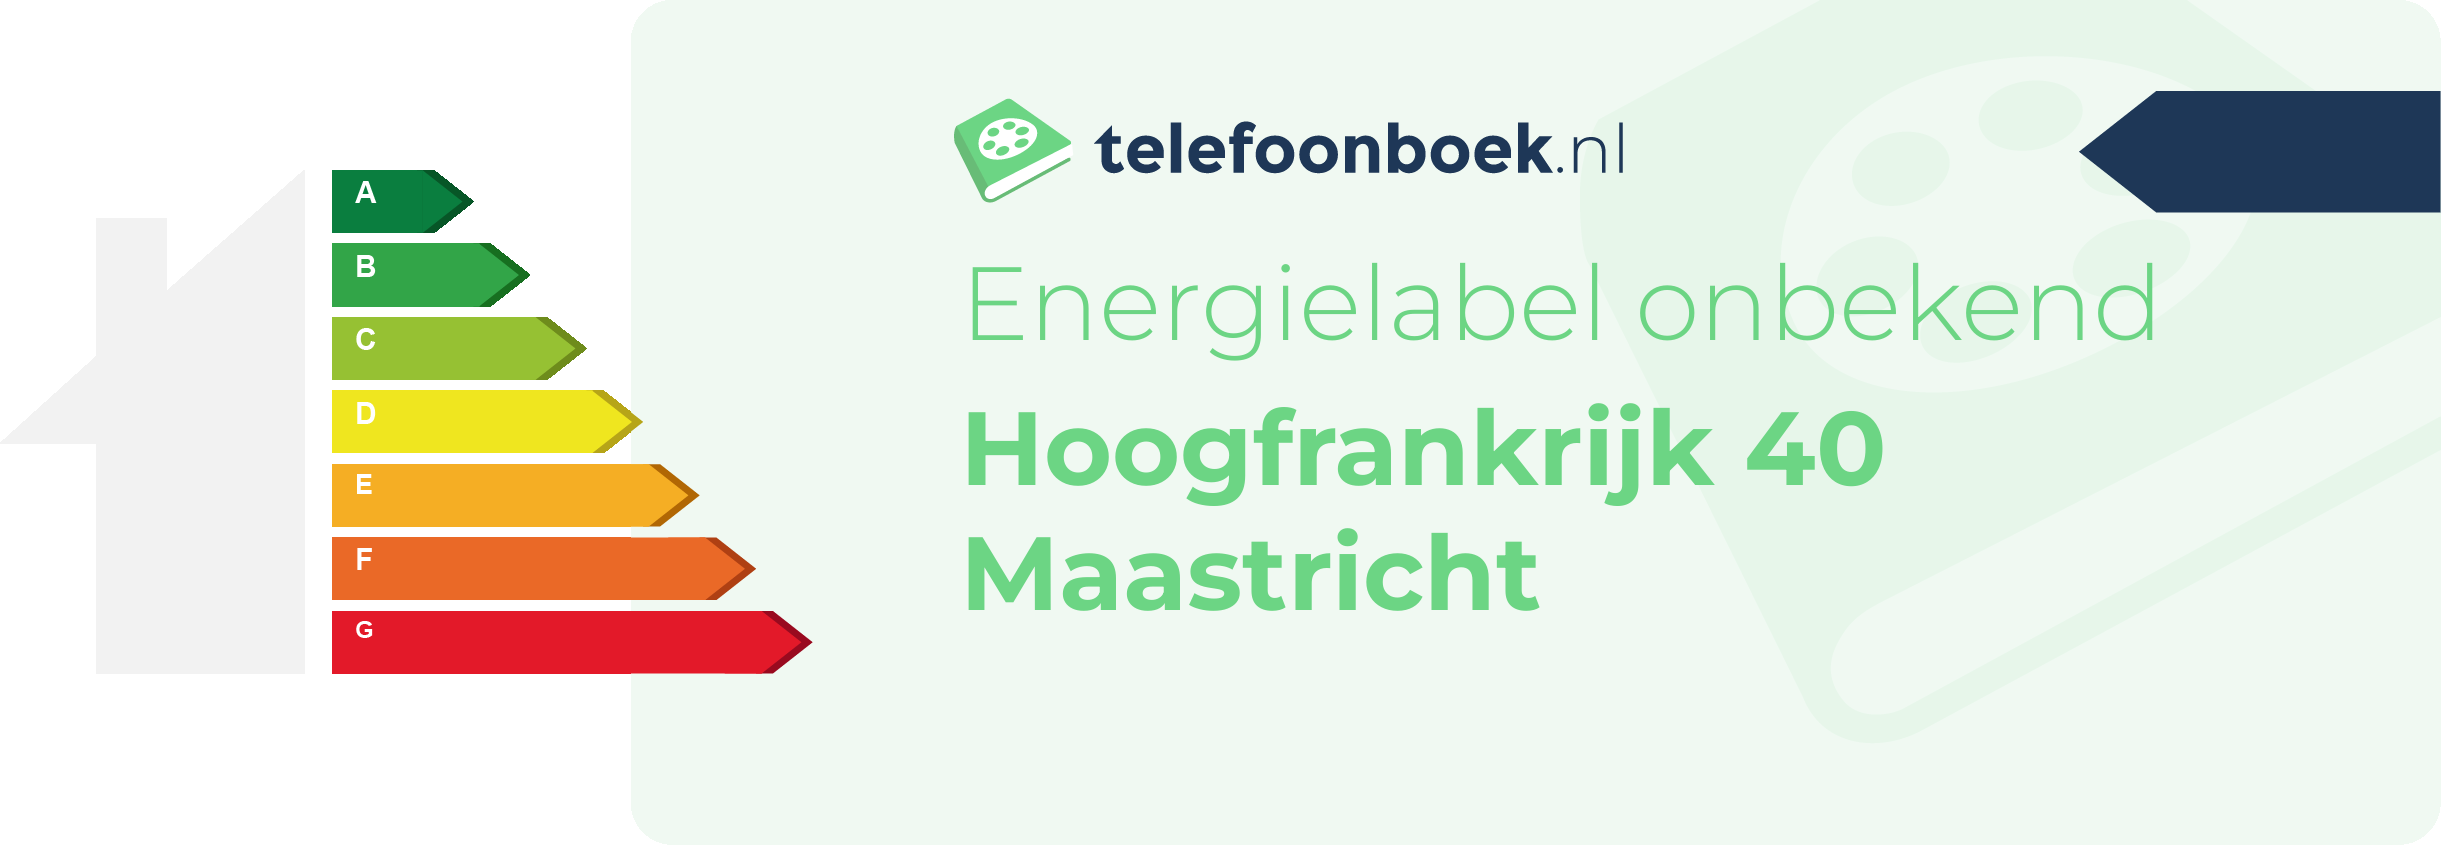 Energielabel Hoogfrankrijk 40 Maastricht